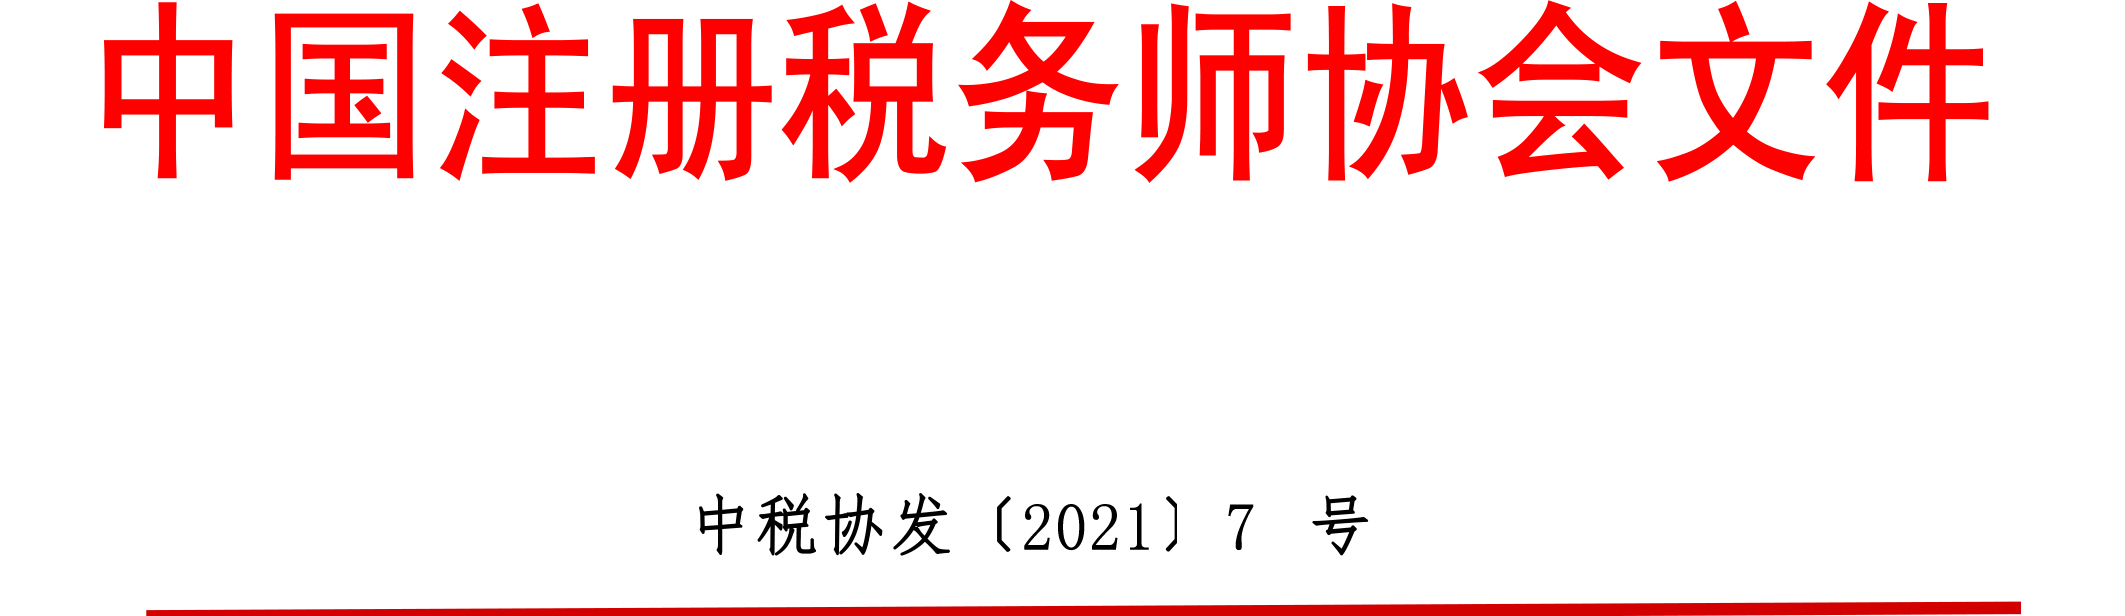 中国注册税务师协会文件